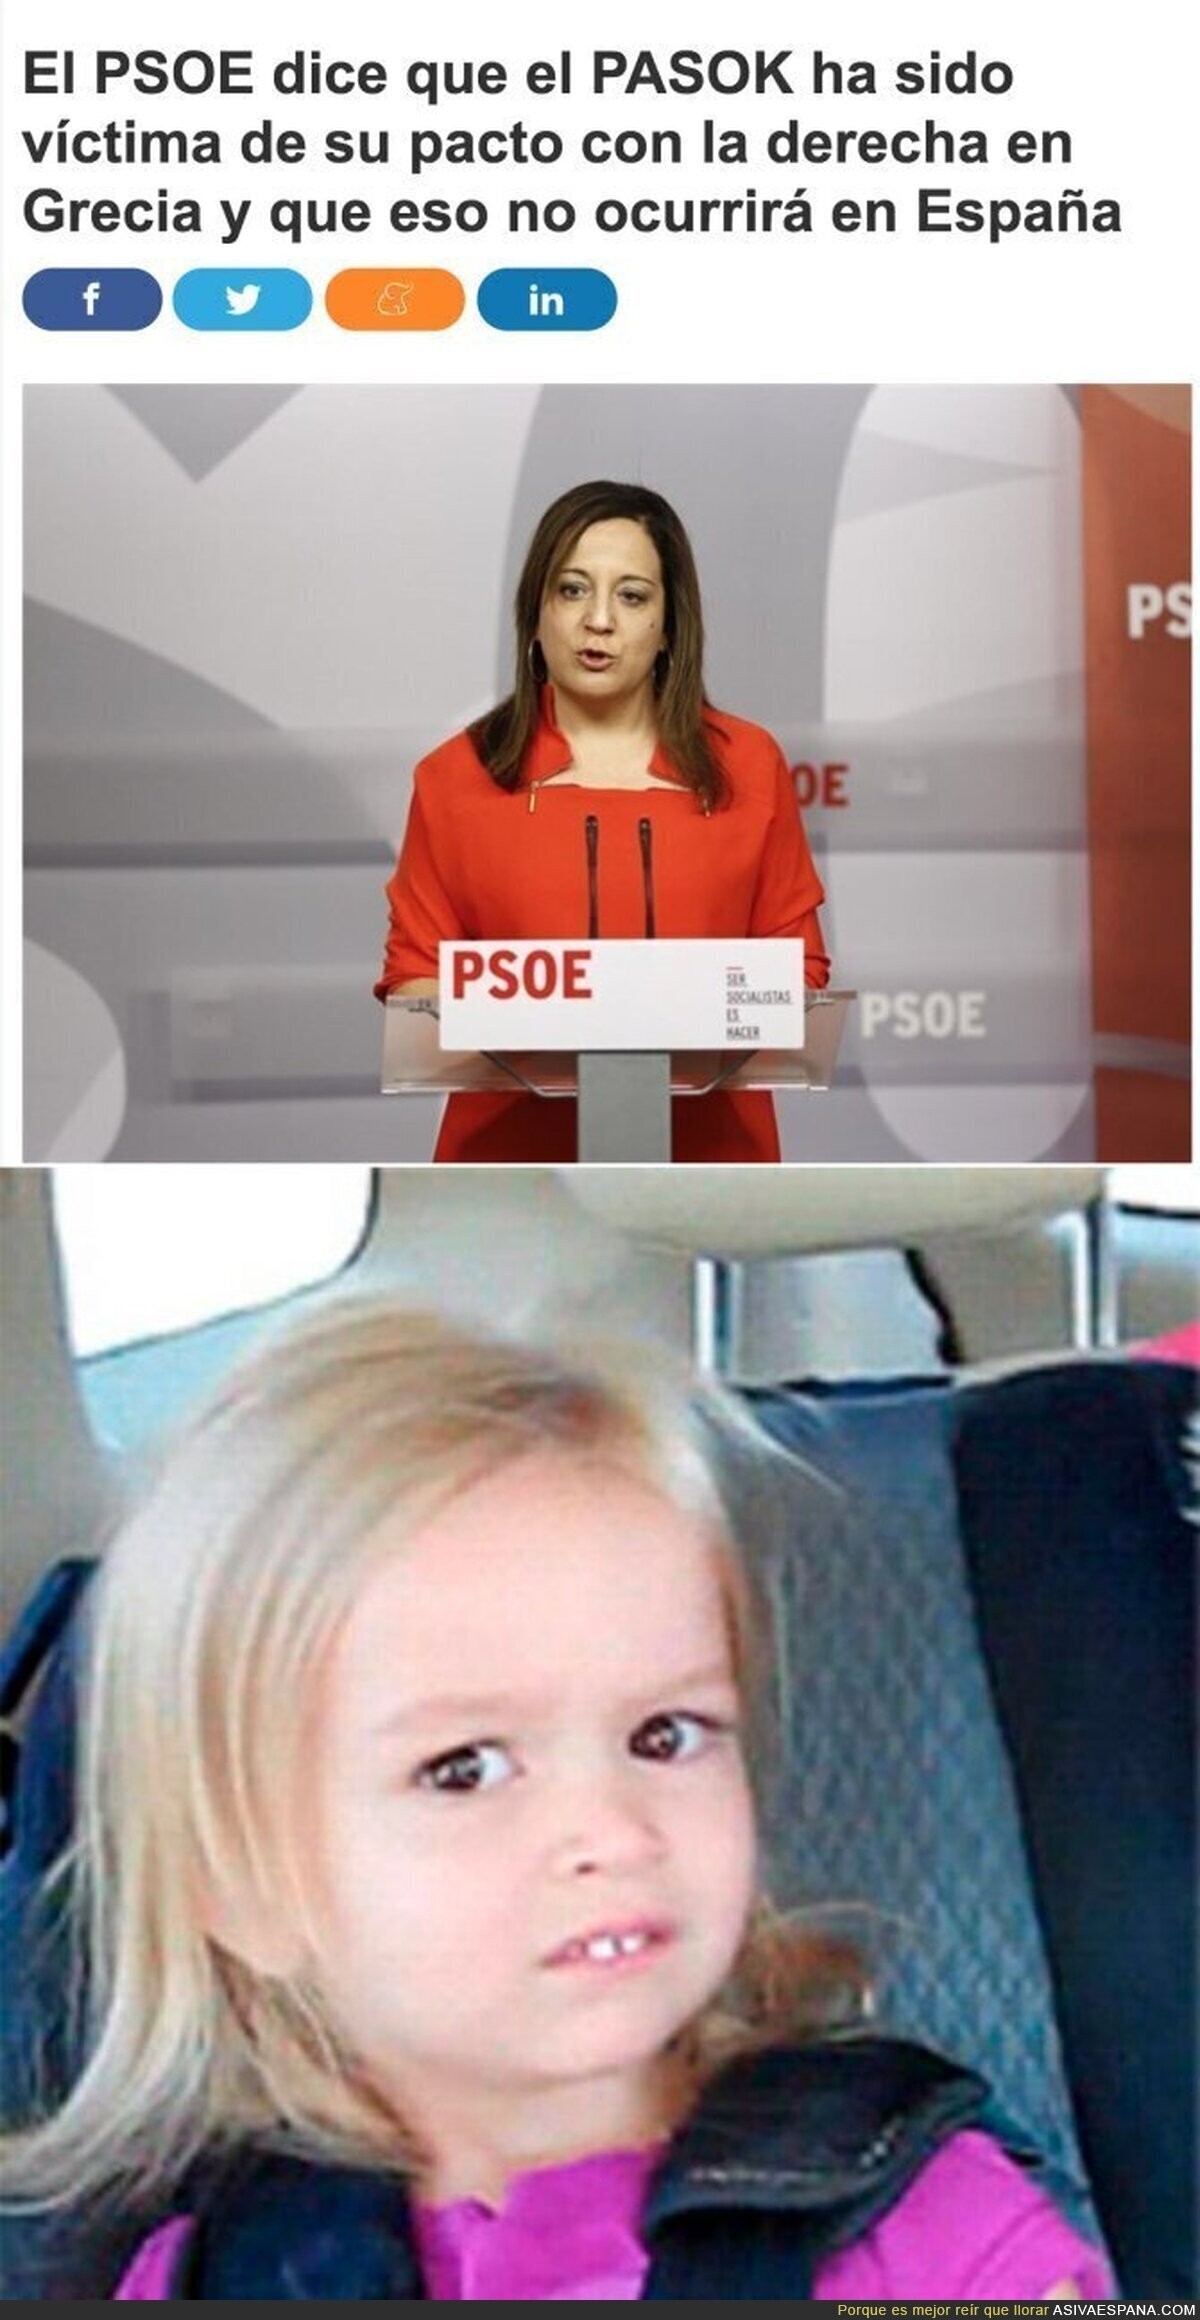 El PSOE, PASOK y la derecha